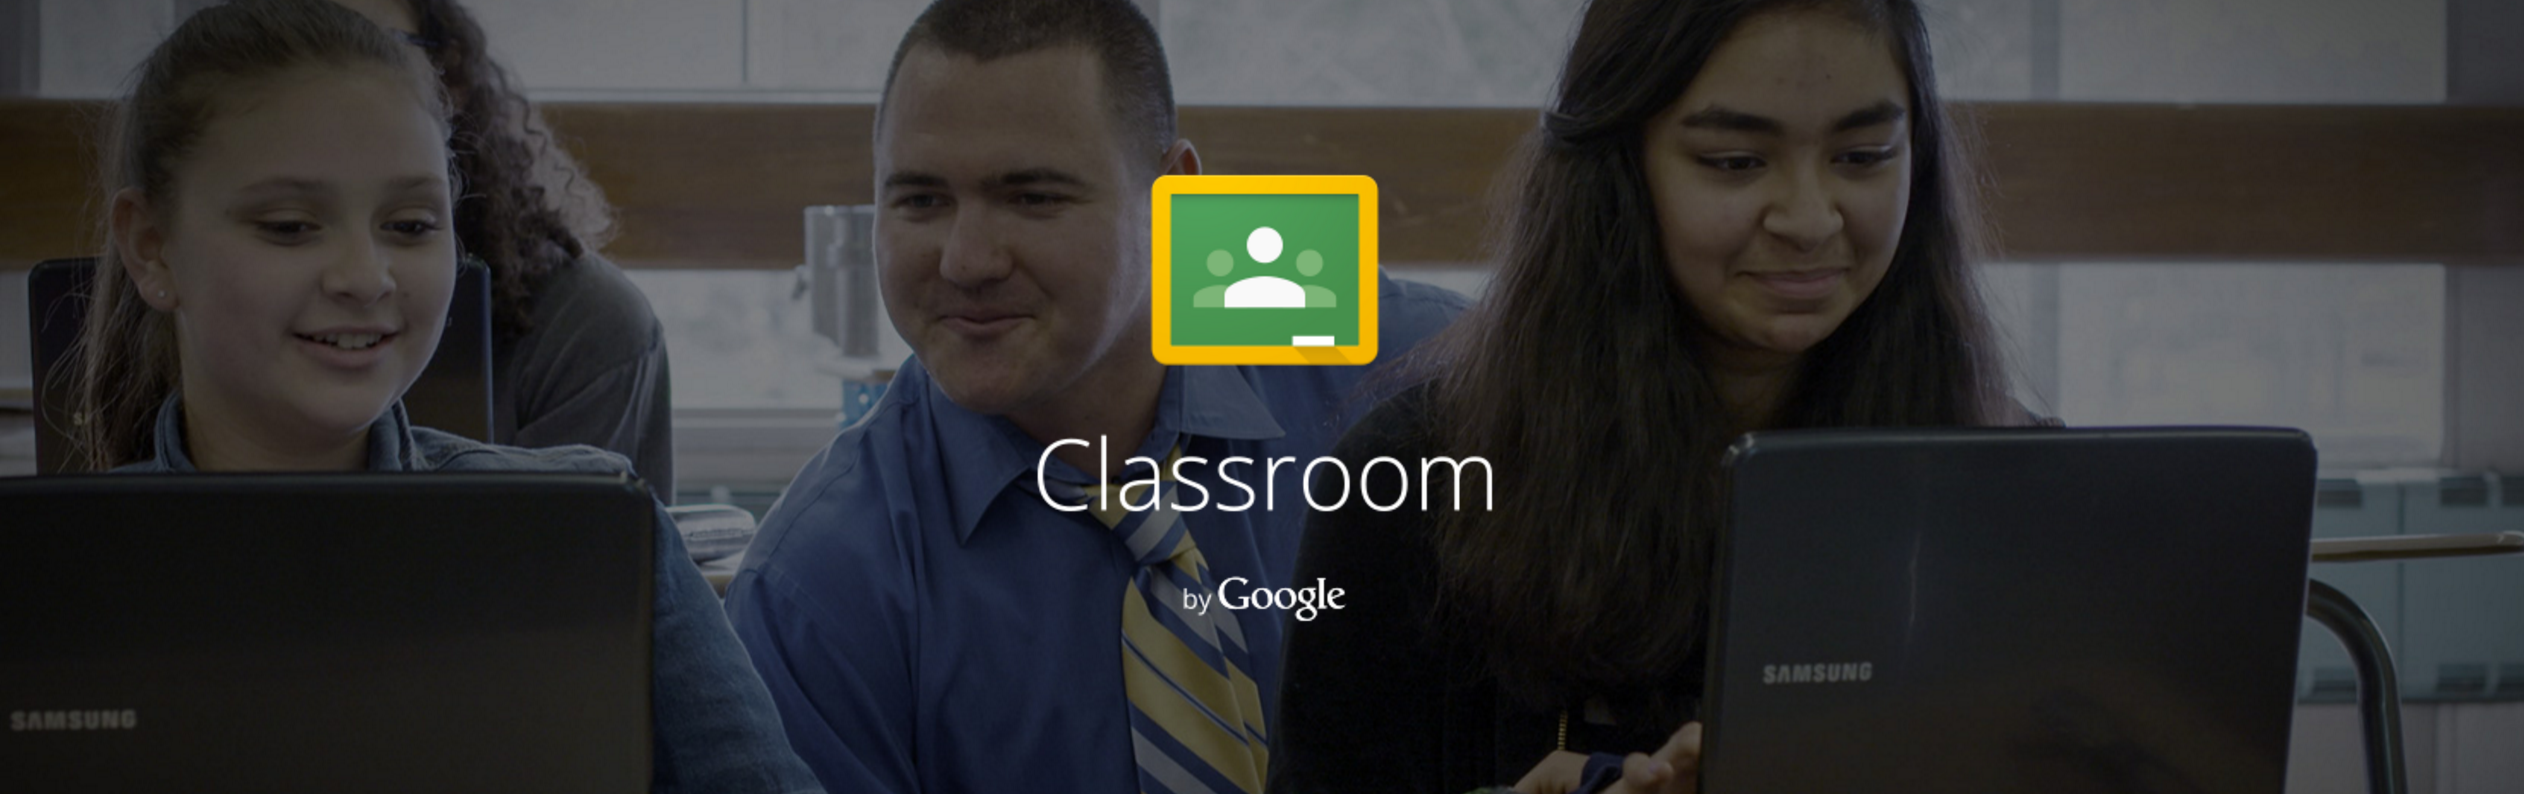 O Google Classroom recebe discussões direcionadas a perguntas, postagens reutilizáveis, mais